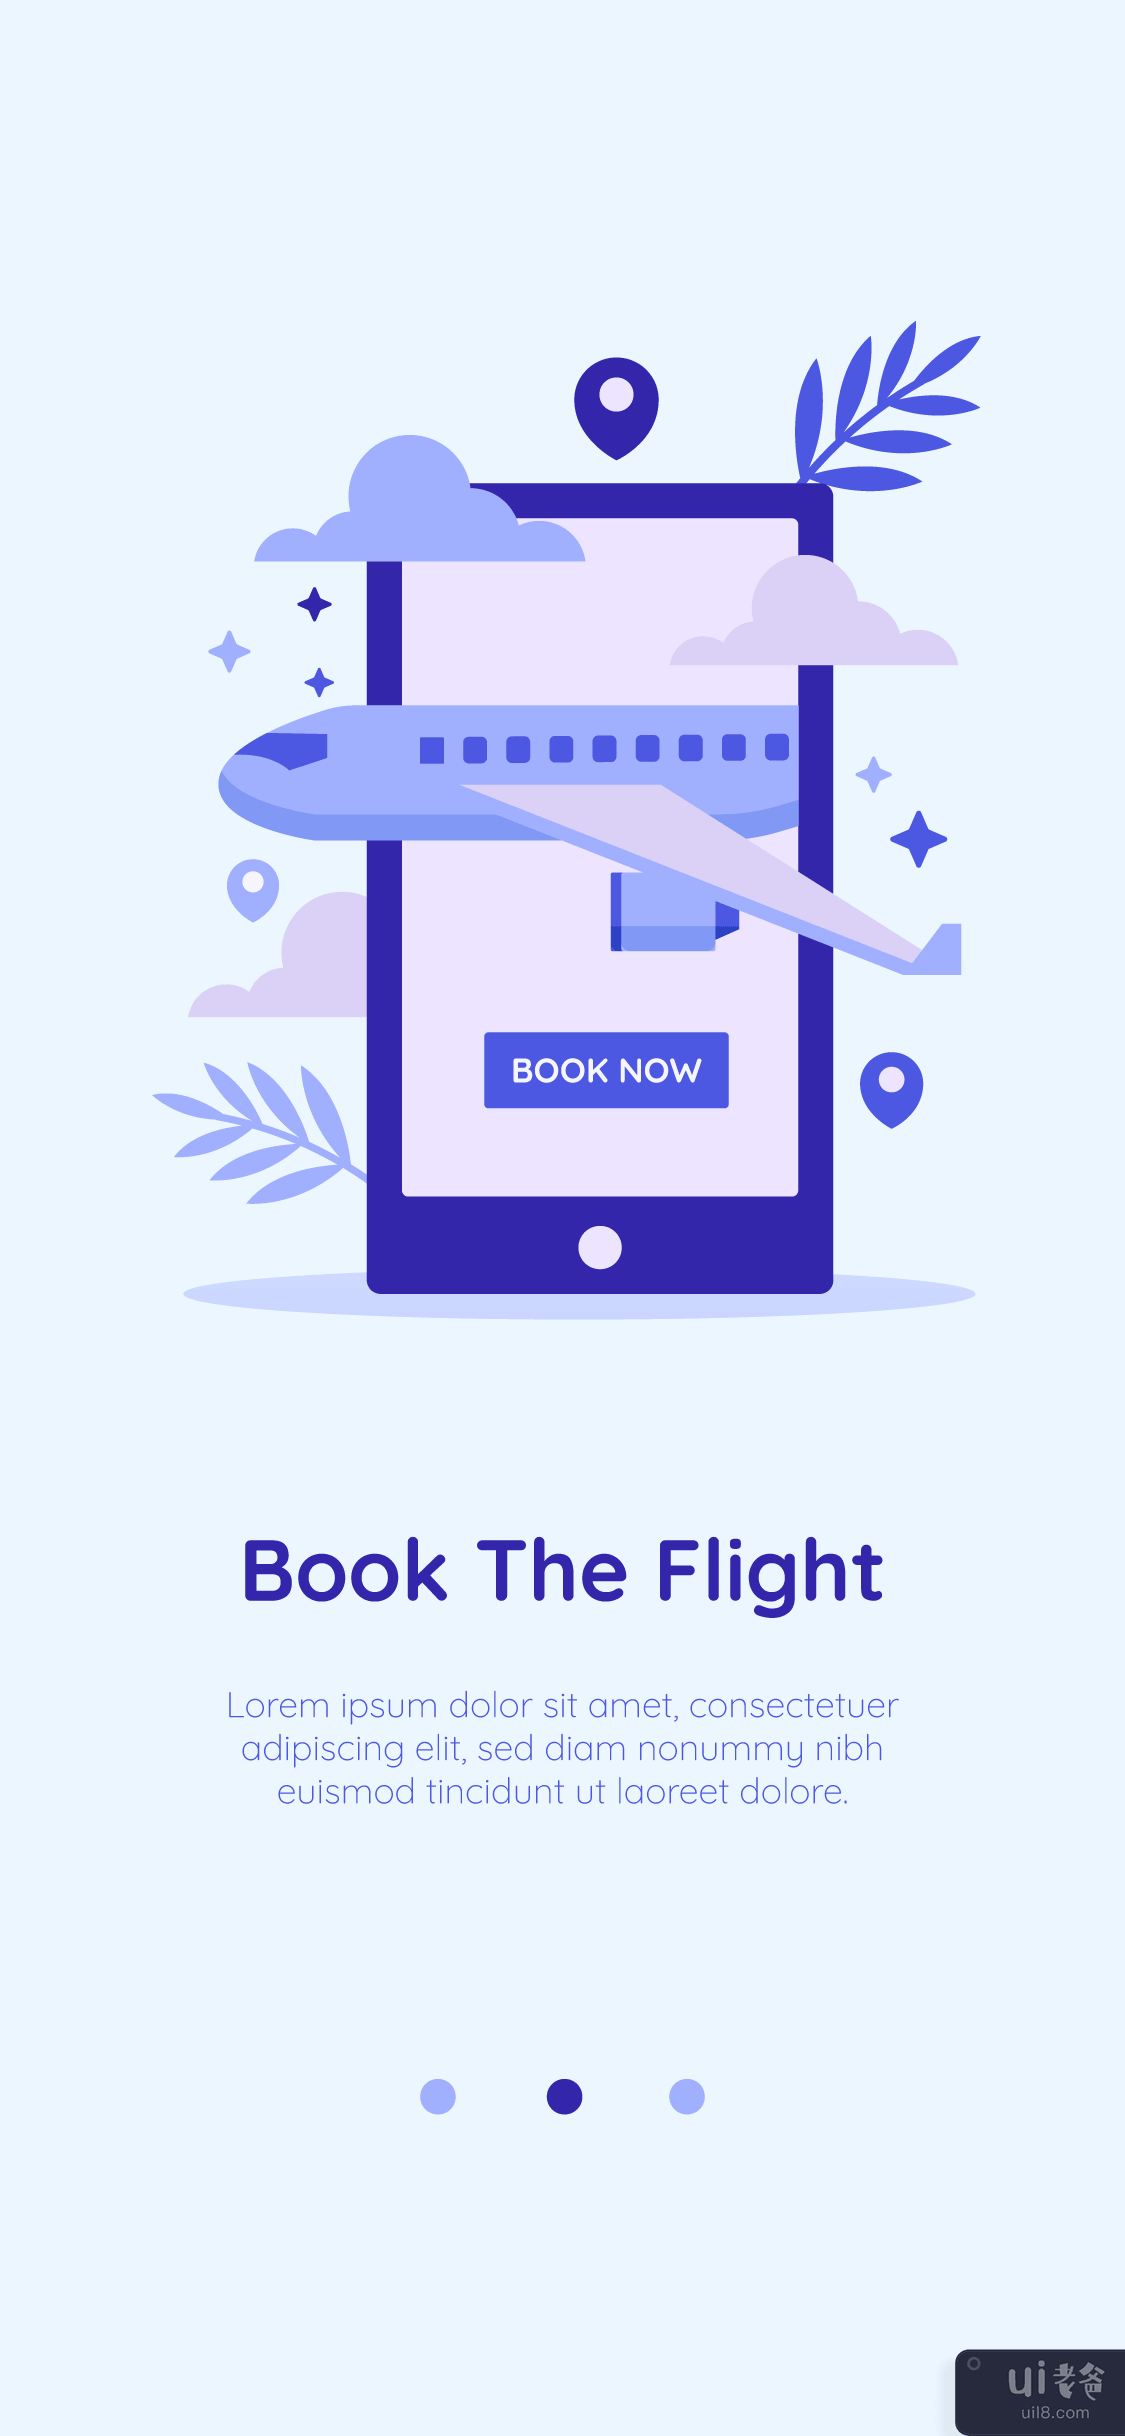 旅游应用概念(Travel App Concept)插图2